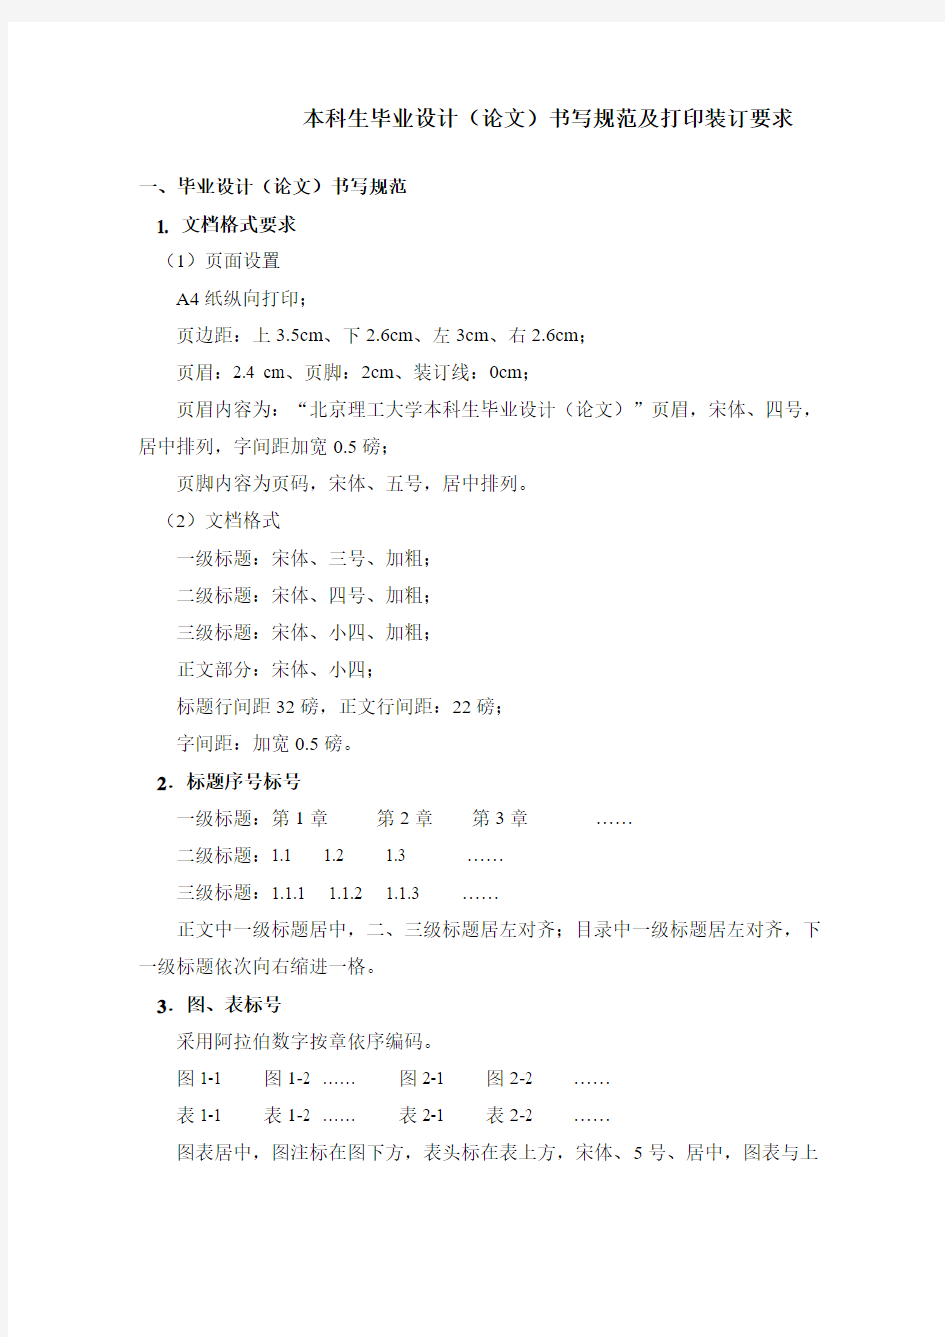 北京理工大学本科生毕业设计(论文)书写规范及打印装订要求